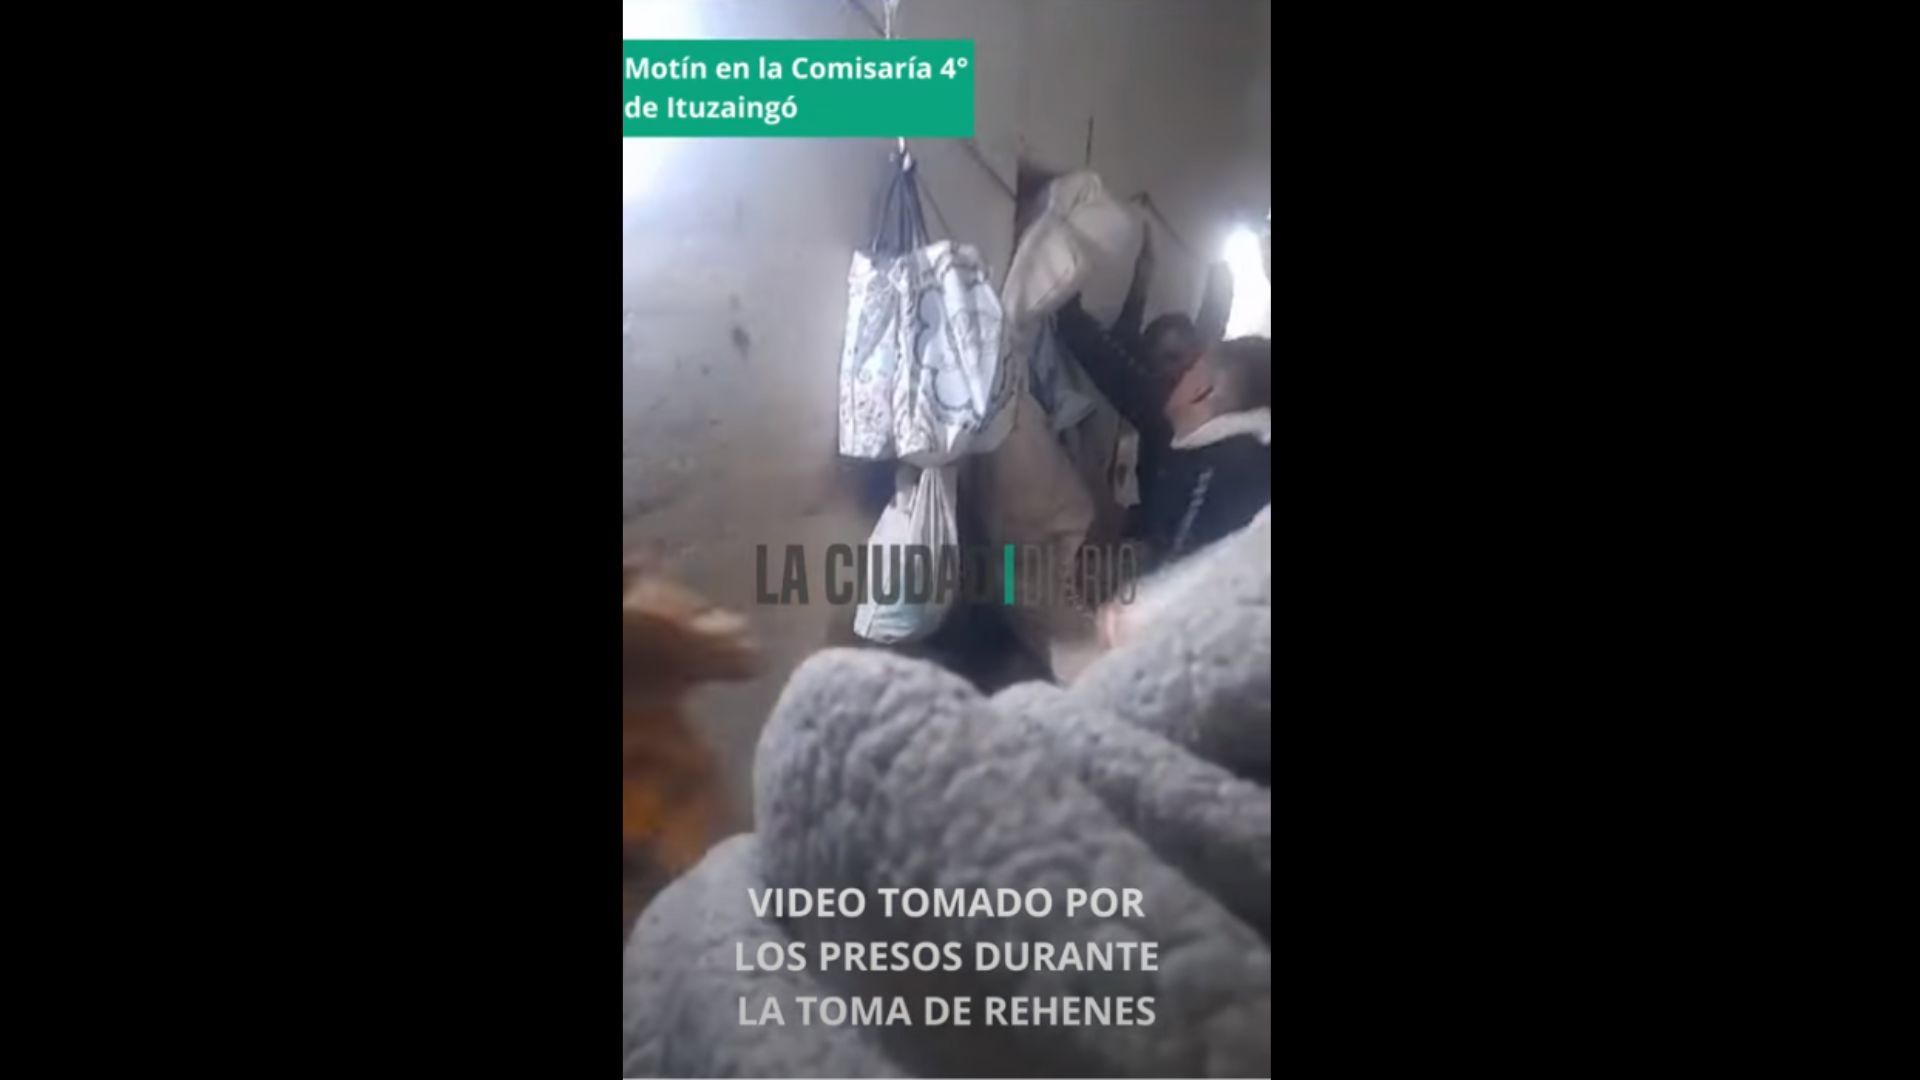 "Metimos dos cobanis para adentro": así hablaban los presos del motín en la Comisaría 4° de Ituzaingó que fueron trasladados a La Plata